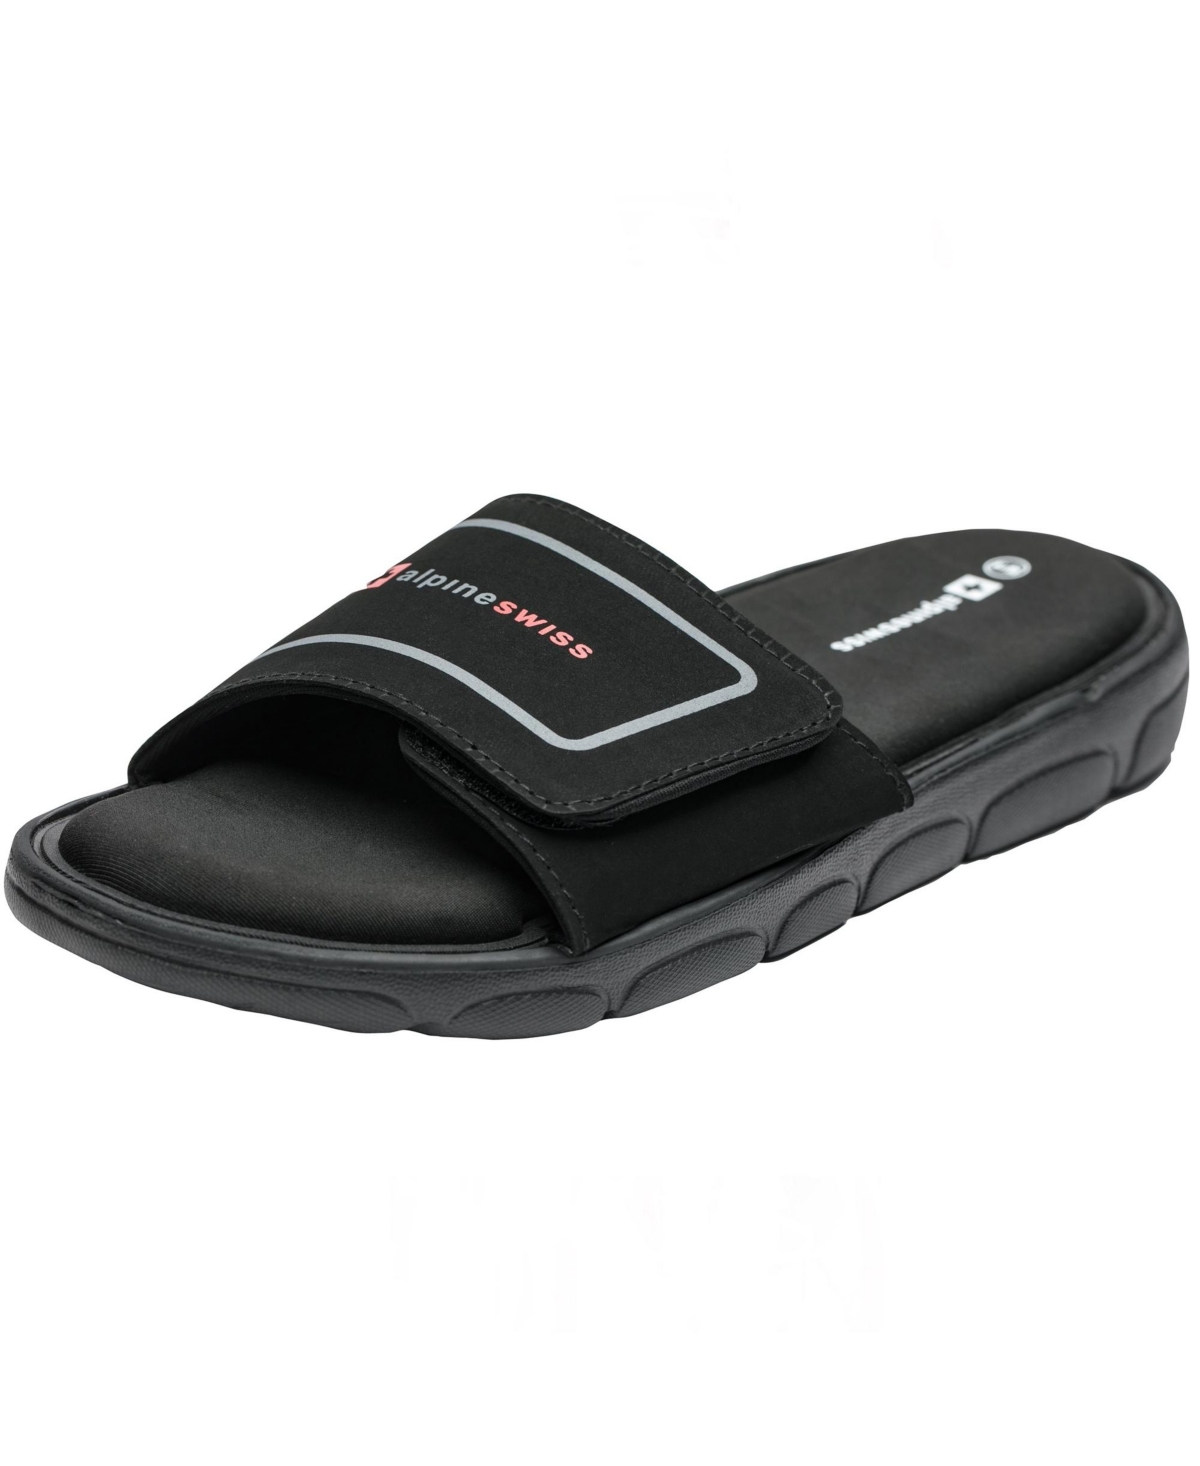 Mens Memory Foam Slide Sandals Adjustable Comfort Athletic Slides - Black